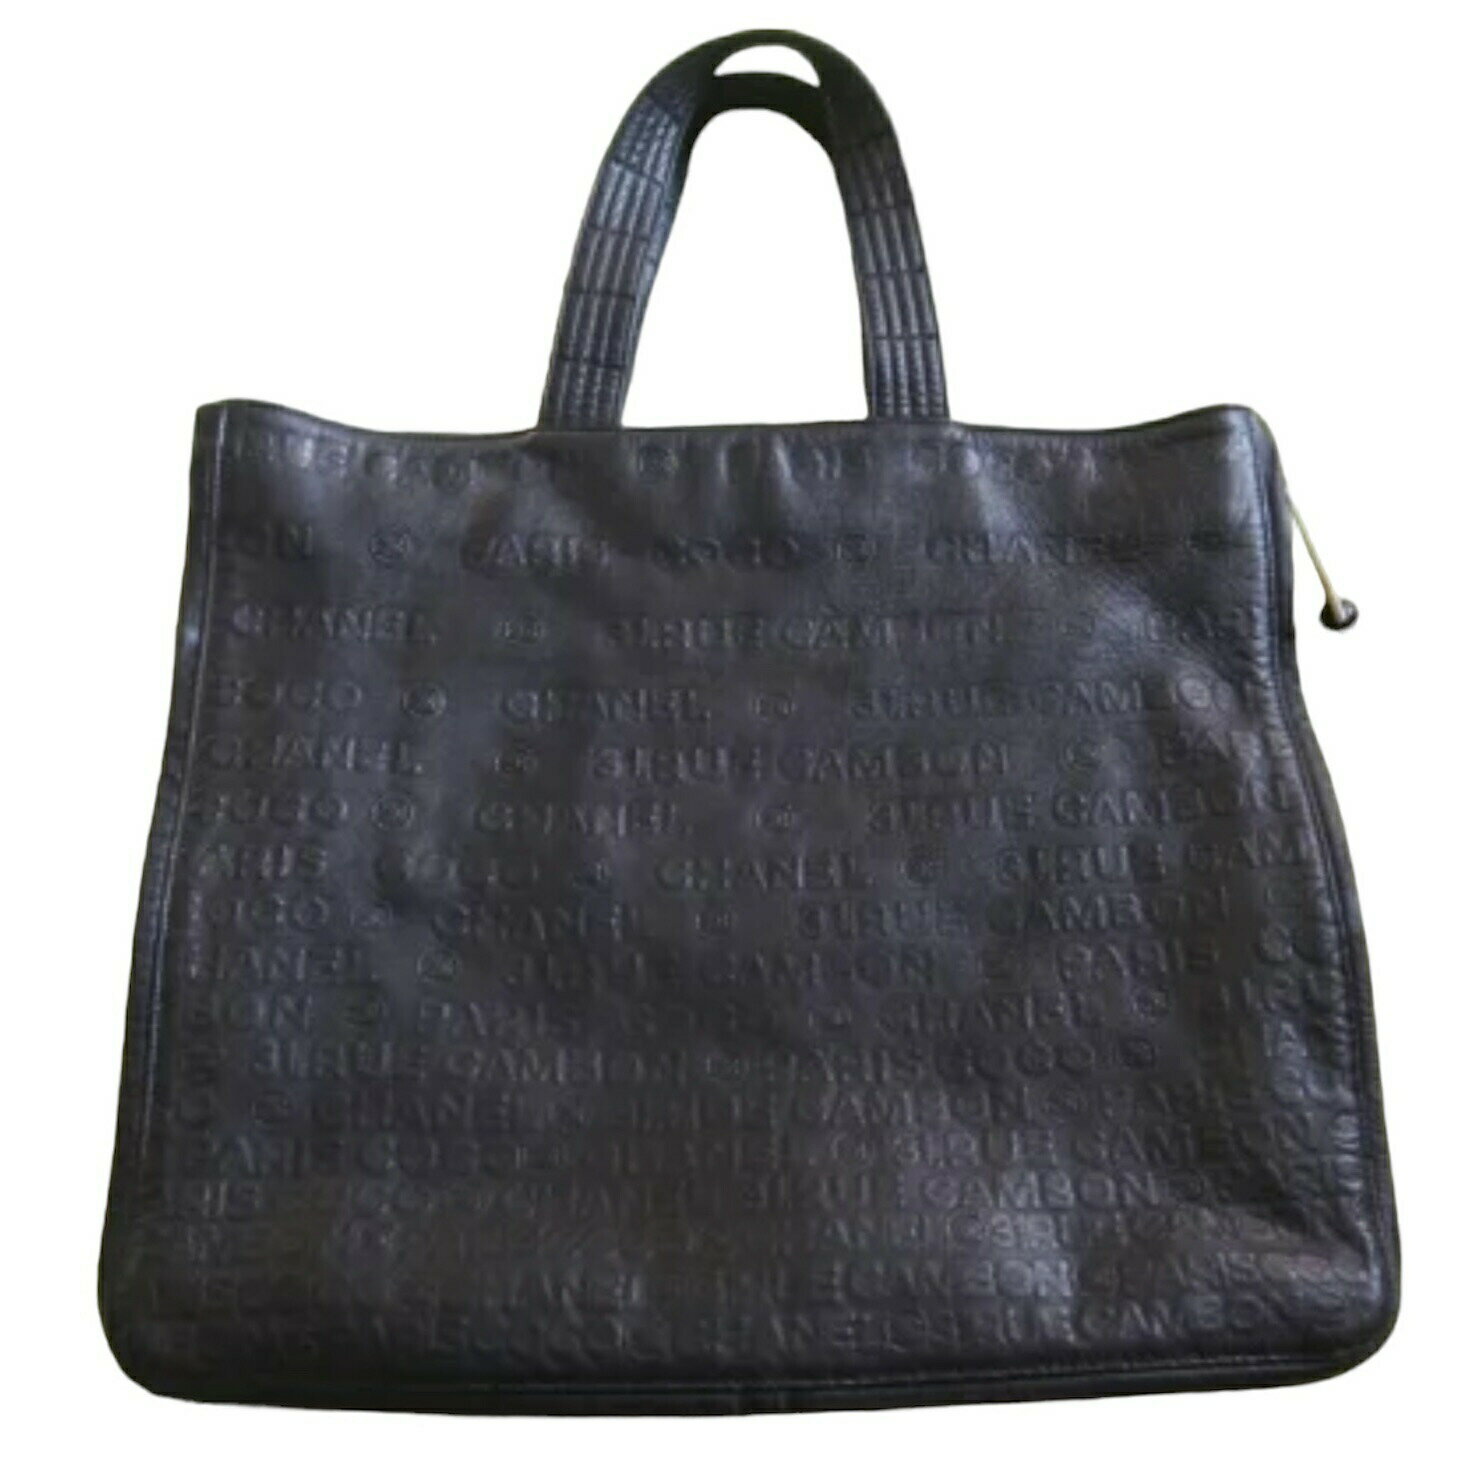 chanel bag シャネル マトラッセチェーンショルダーバッグ 鞄レザートート 黒 ビックサイズ 中古 正規 c16-3100 bsi